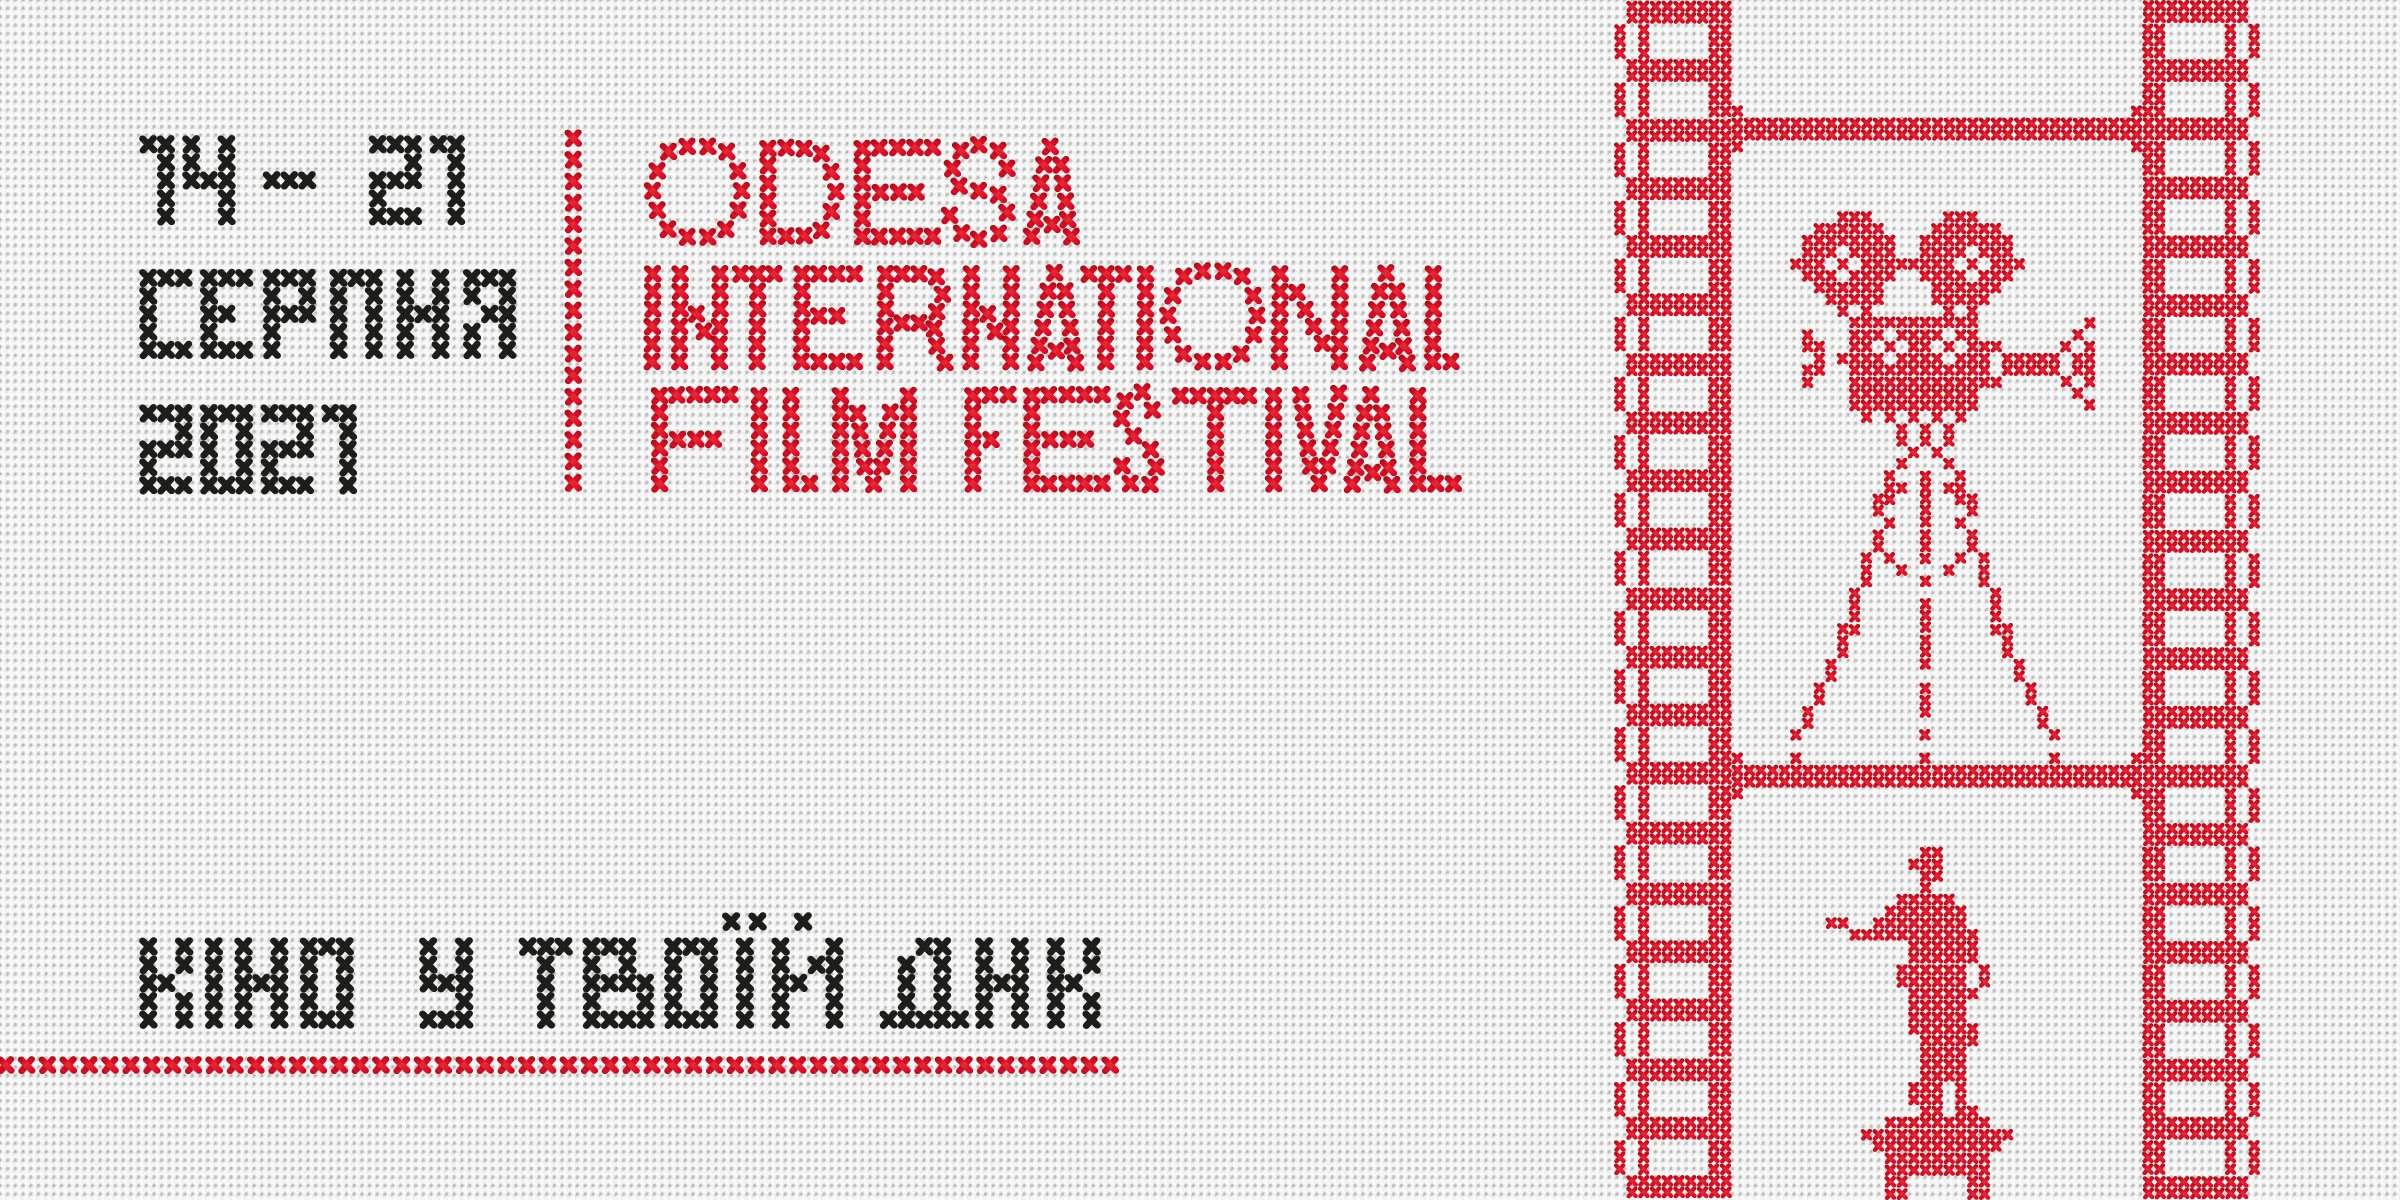 12-й Одеський міжнародний кінофестиваль представляє офіційний постер